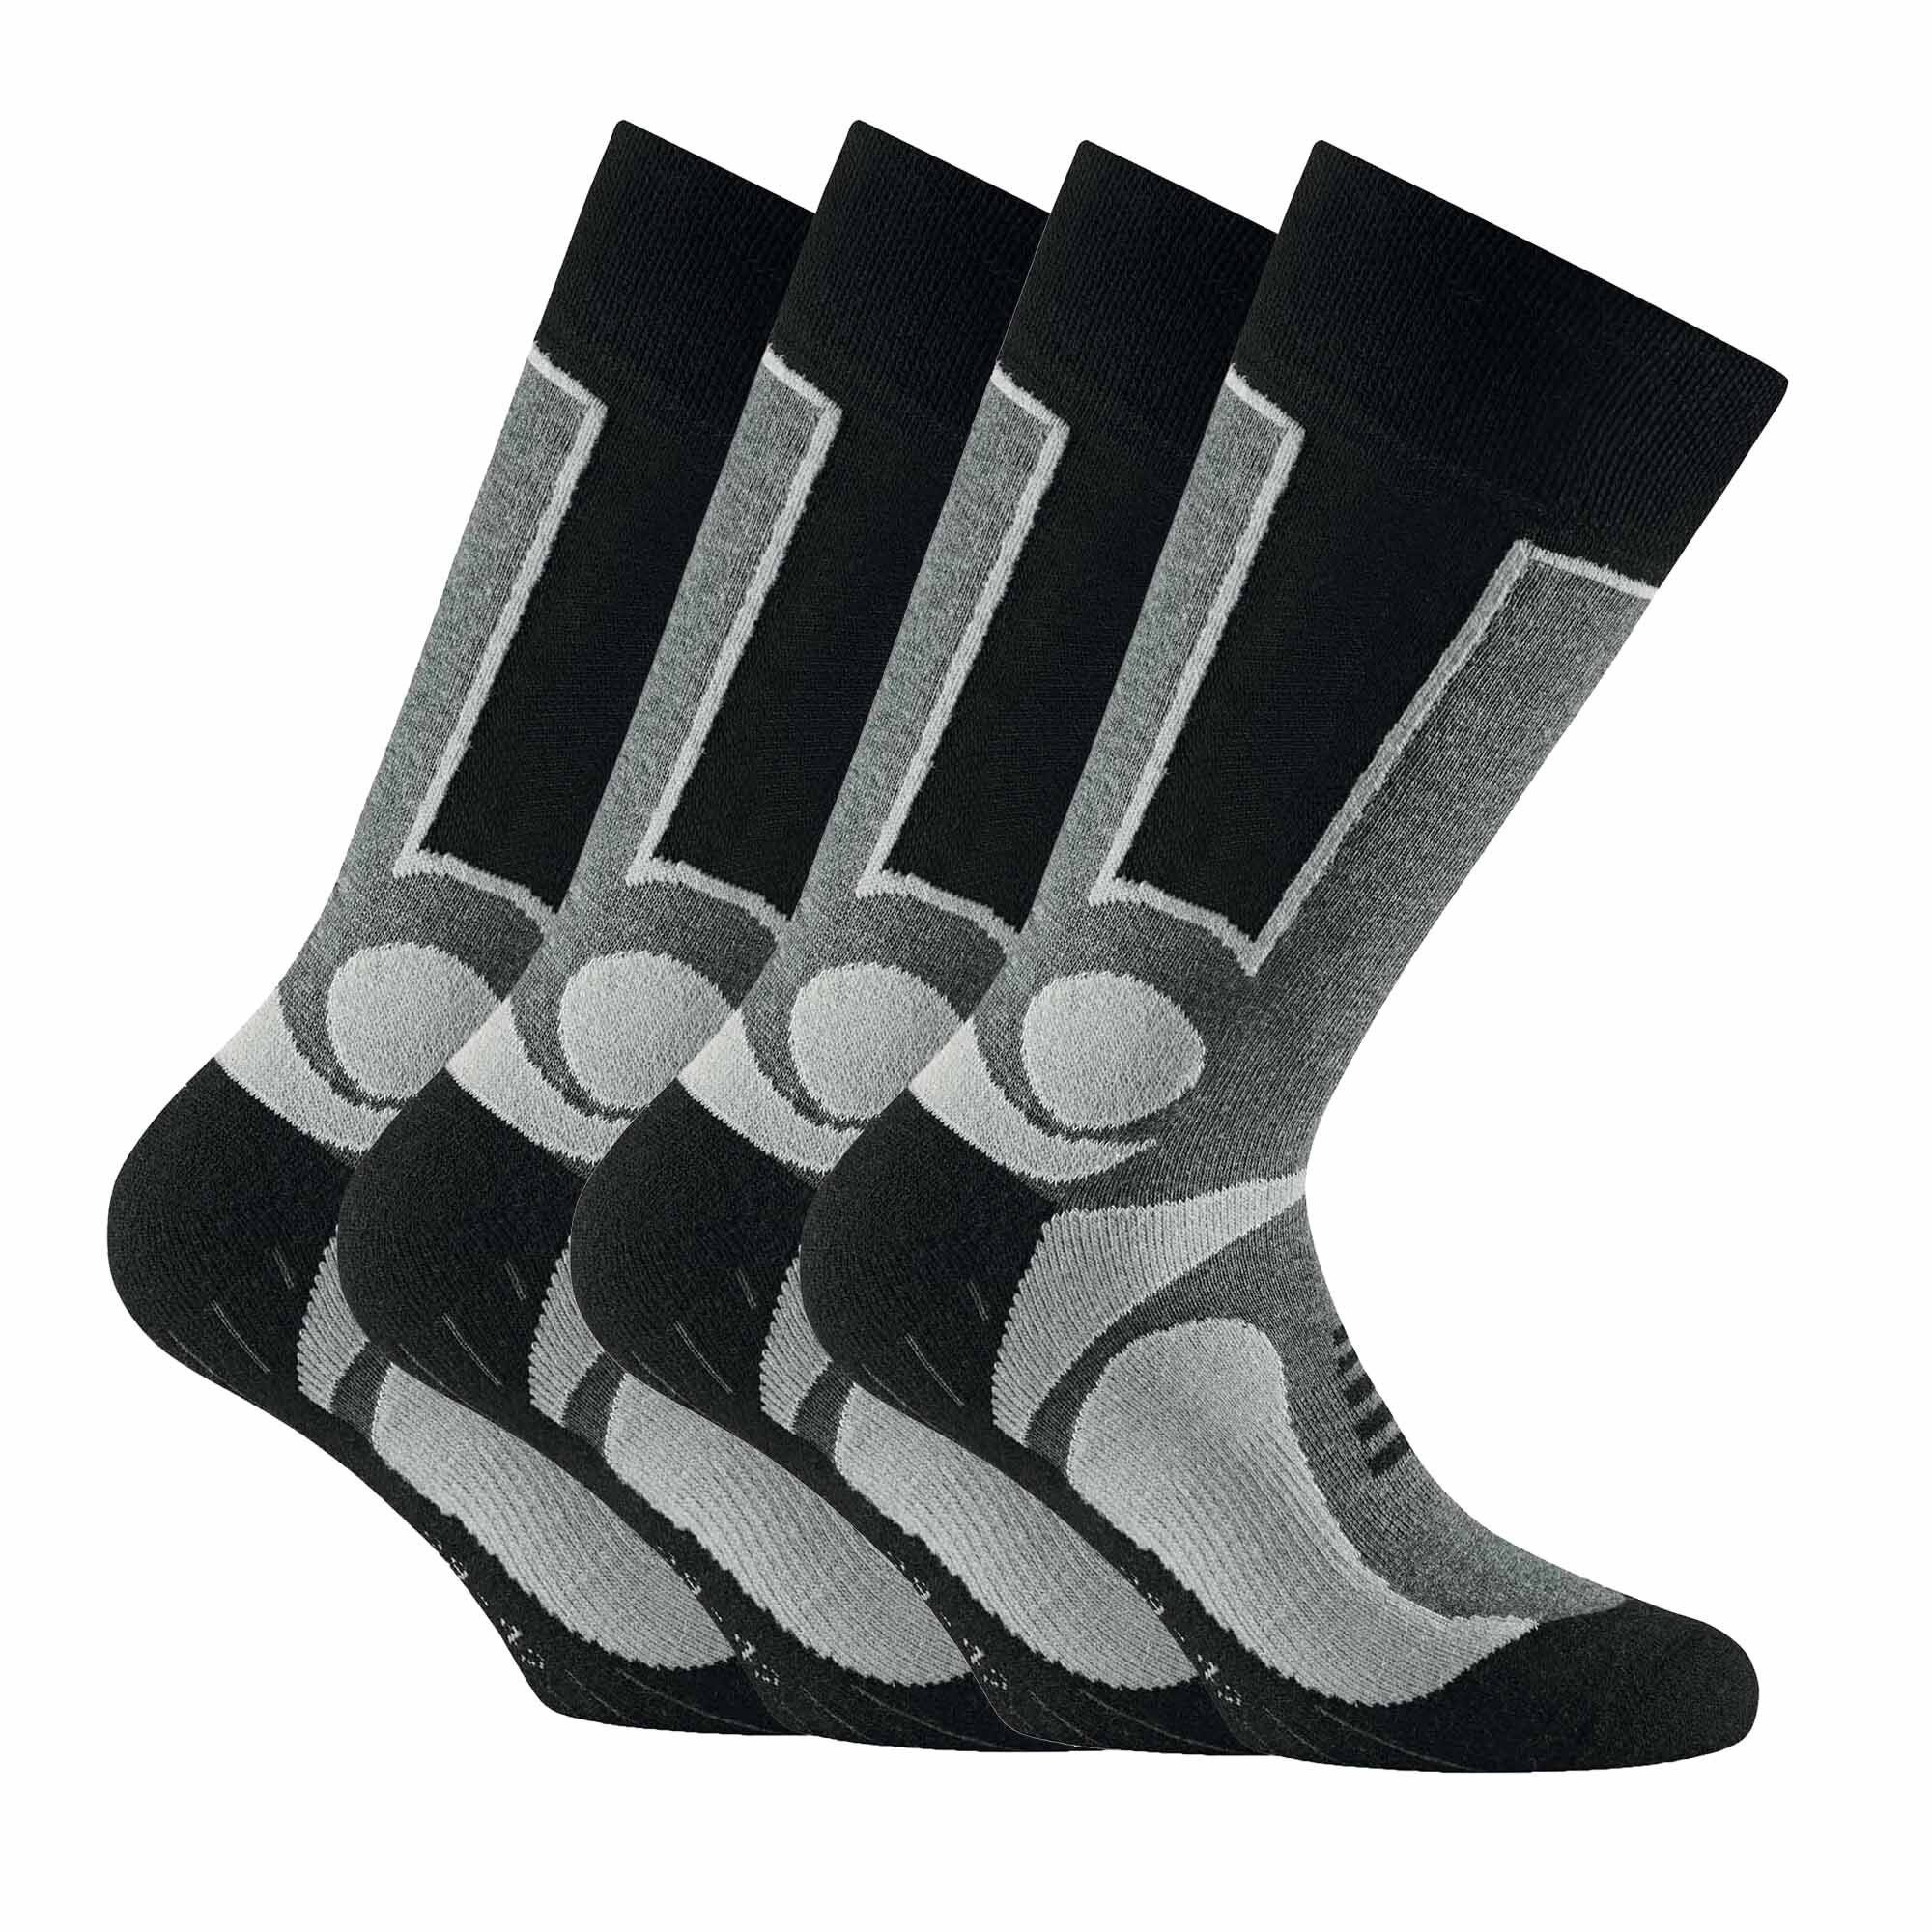 Rohner Socks Sportsocken Unisex Trekking Socken, 4er Pack - Basic Outdoor Grau